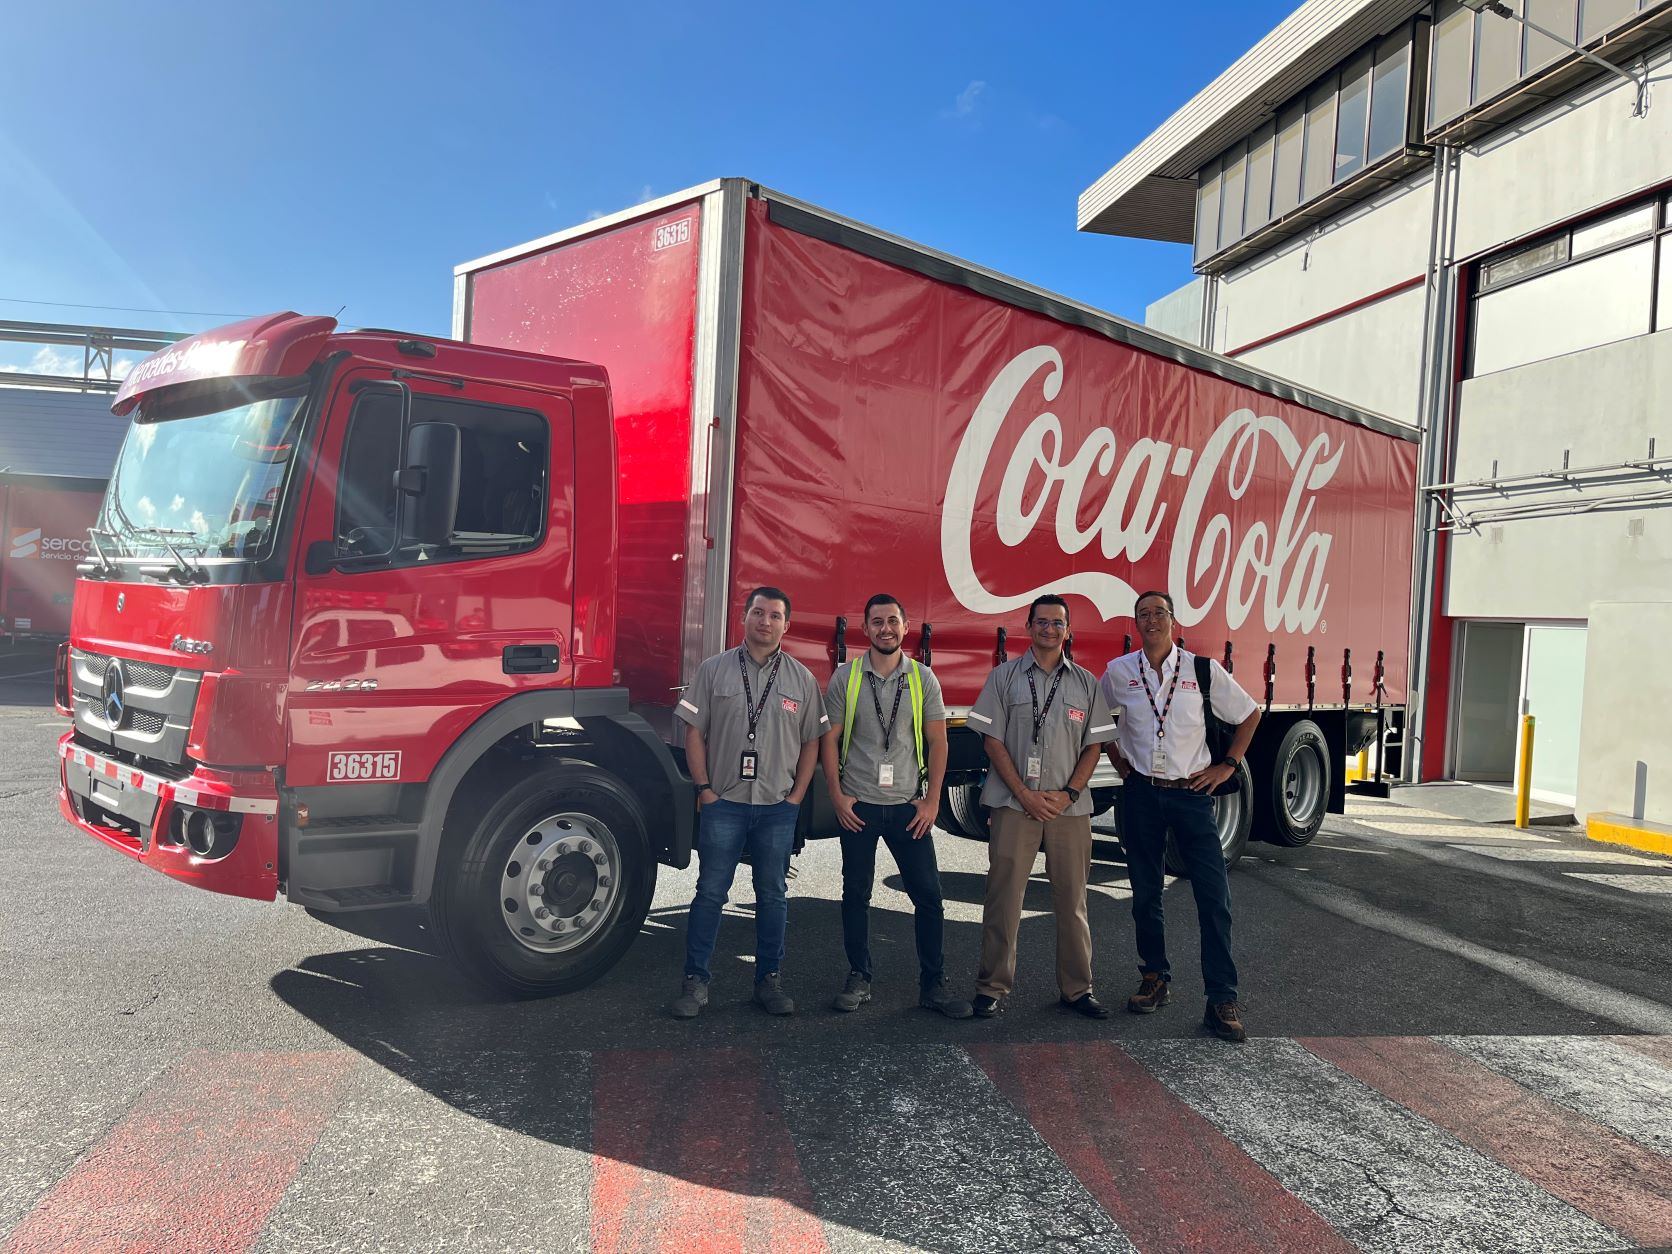 Regresan las caravanas navideñas de Coca-Cola a San José, Heredia y Alajuela